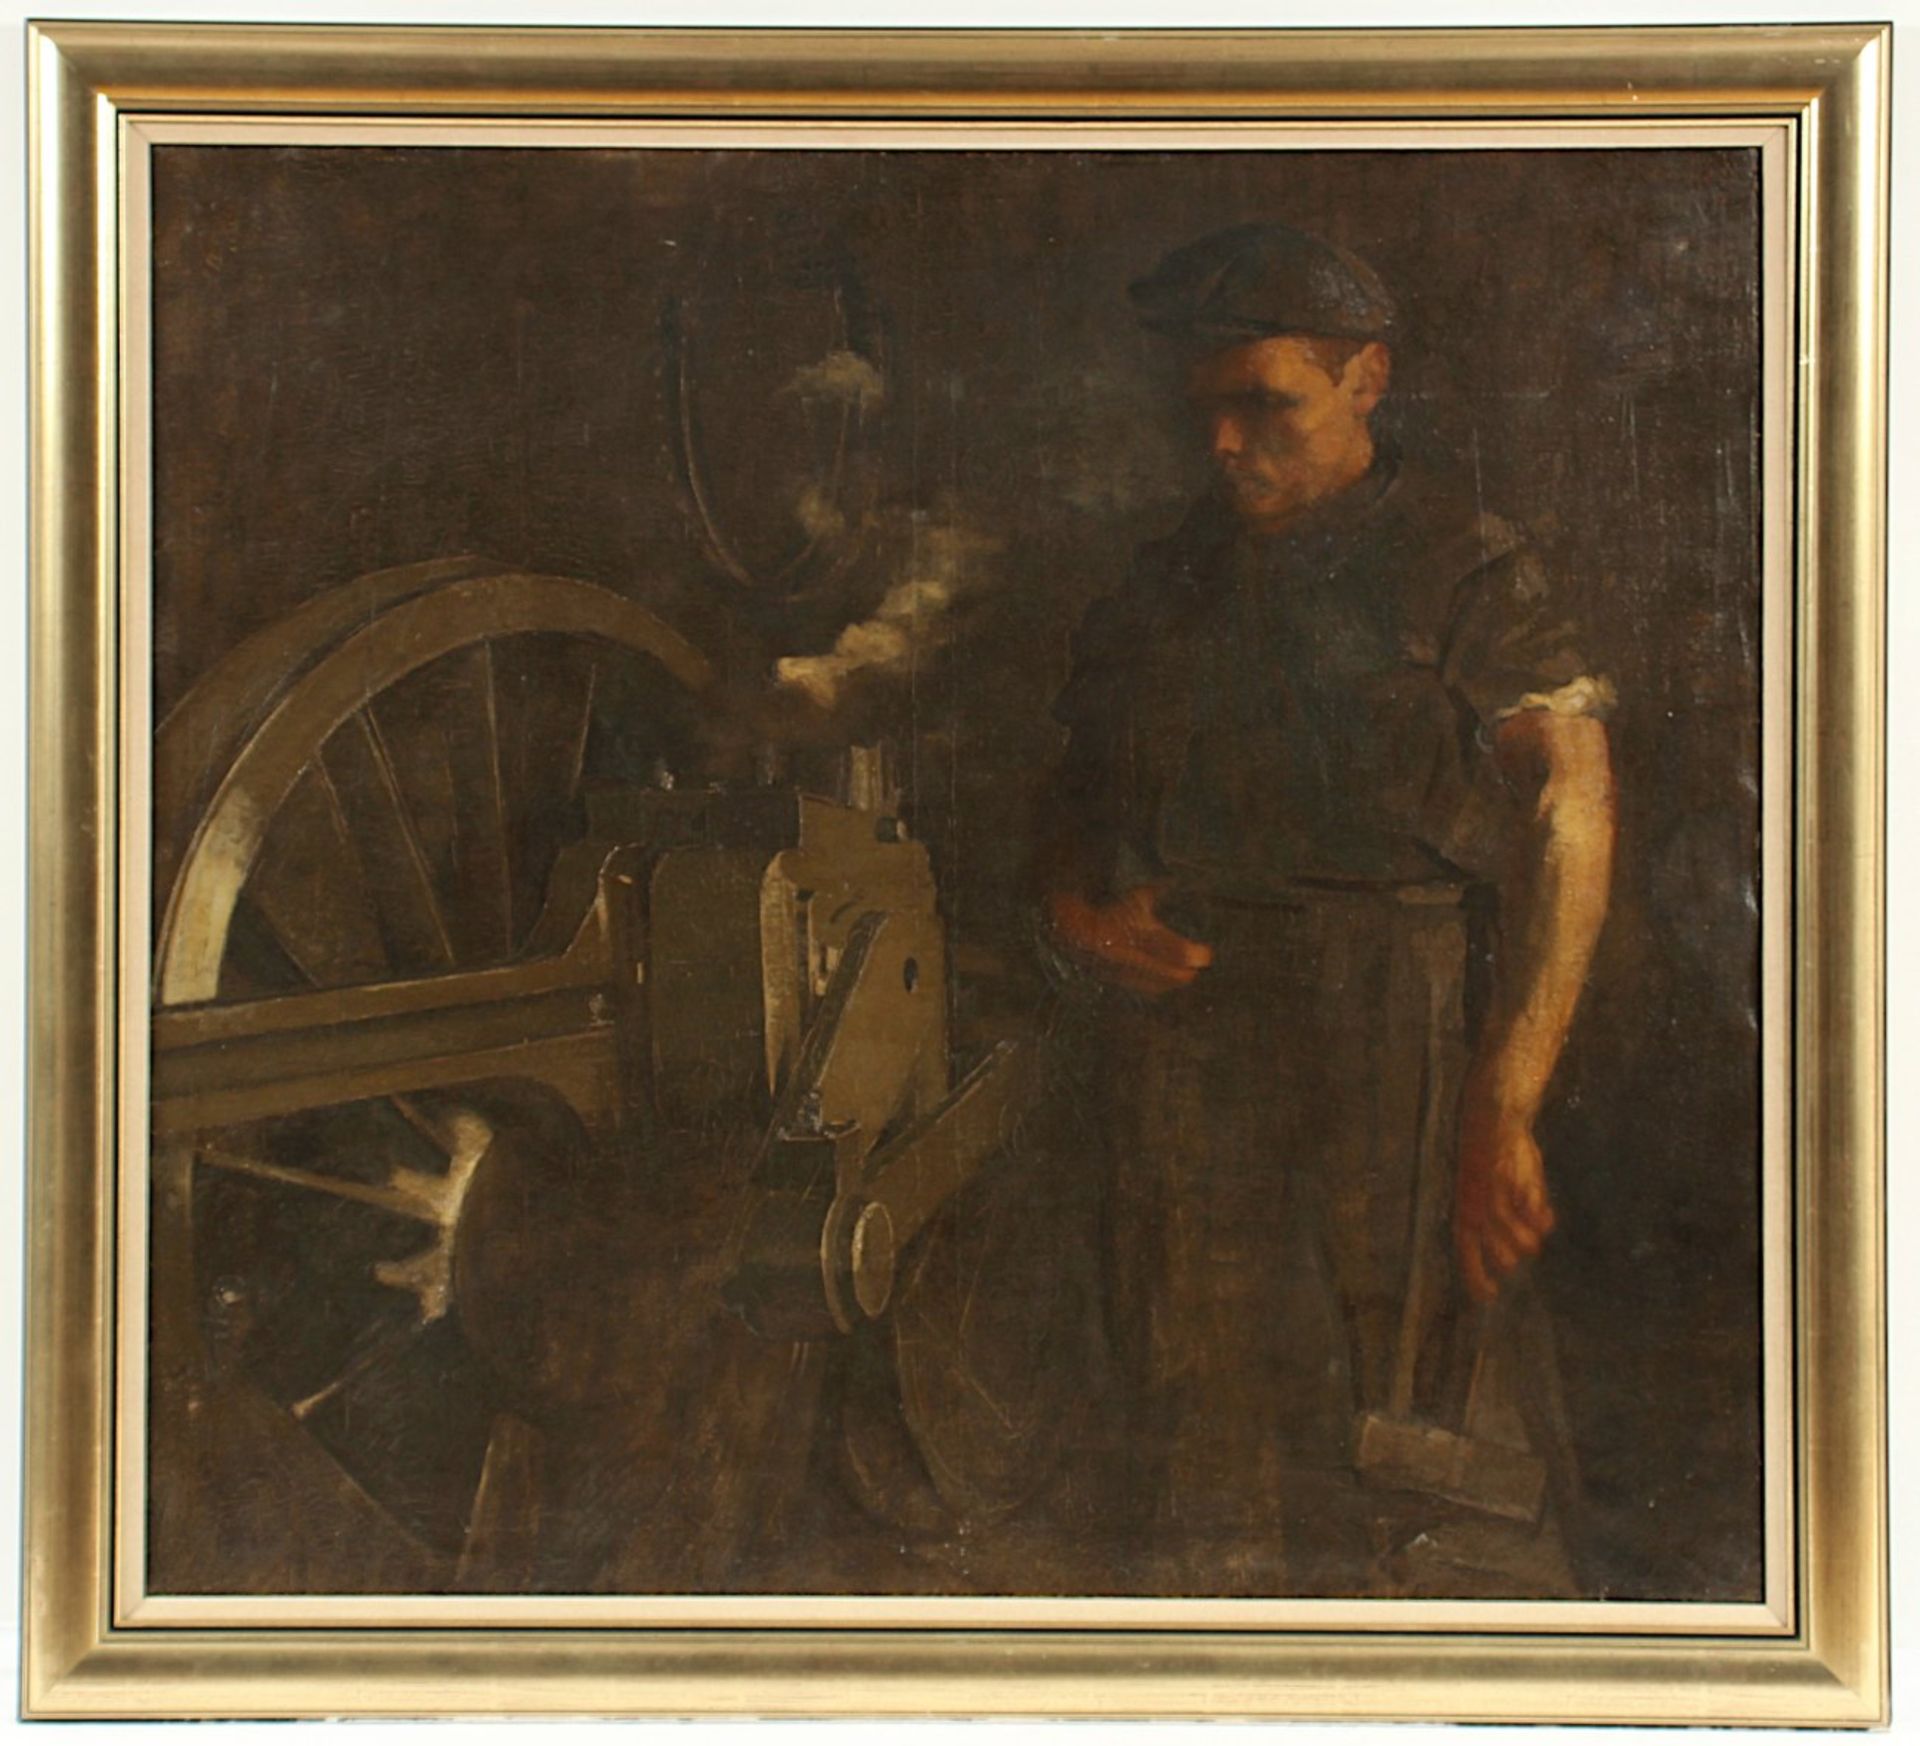 BRÜLL, Aladár (1890-1953), "Arbeiter an einer Lokomotive", Öl/Lwd., 95 x 105, oben rechts signiert